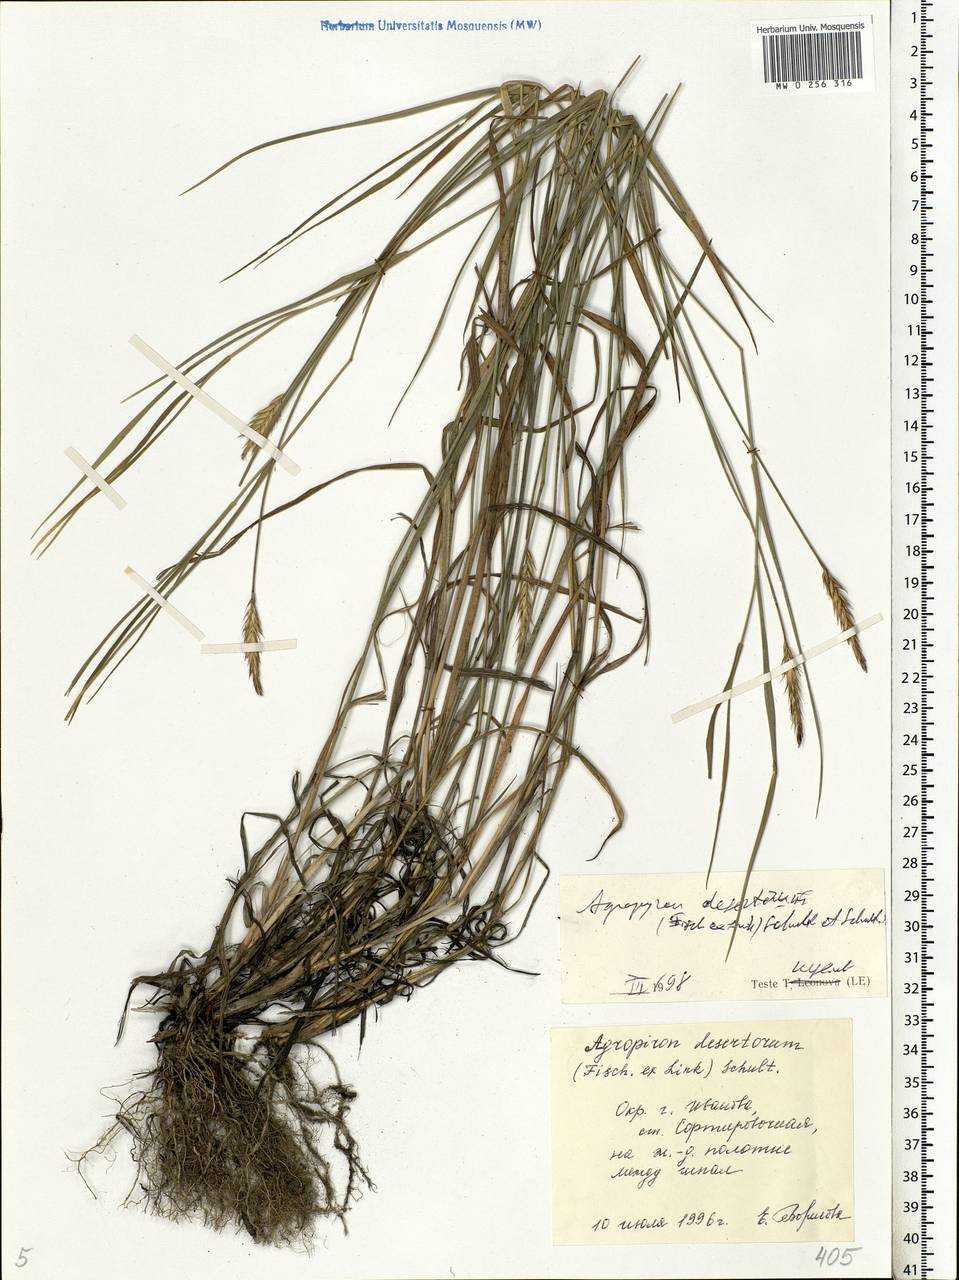 Agropyron desertorum (Fisch. ex Link) Schult., Eastern Europe, Central forest region (E5) (Russia)